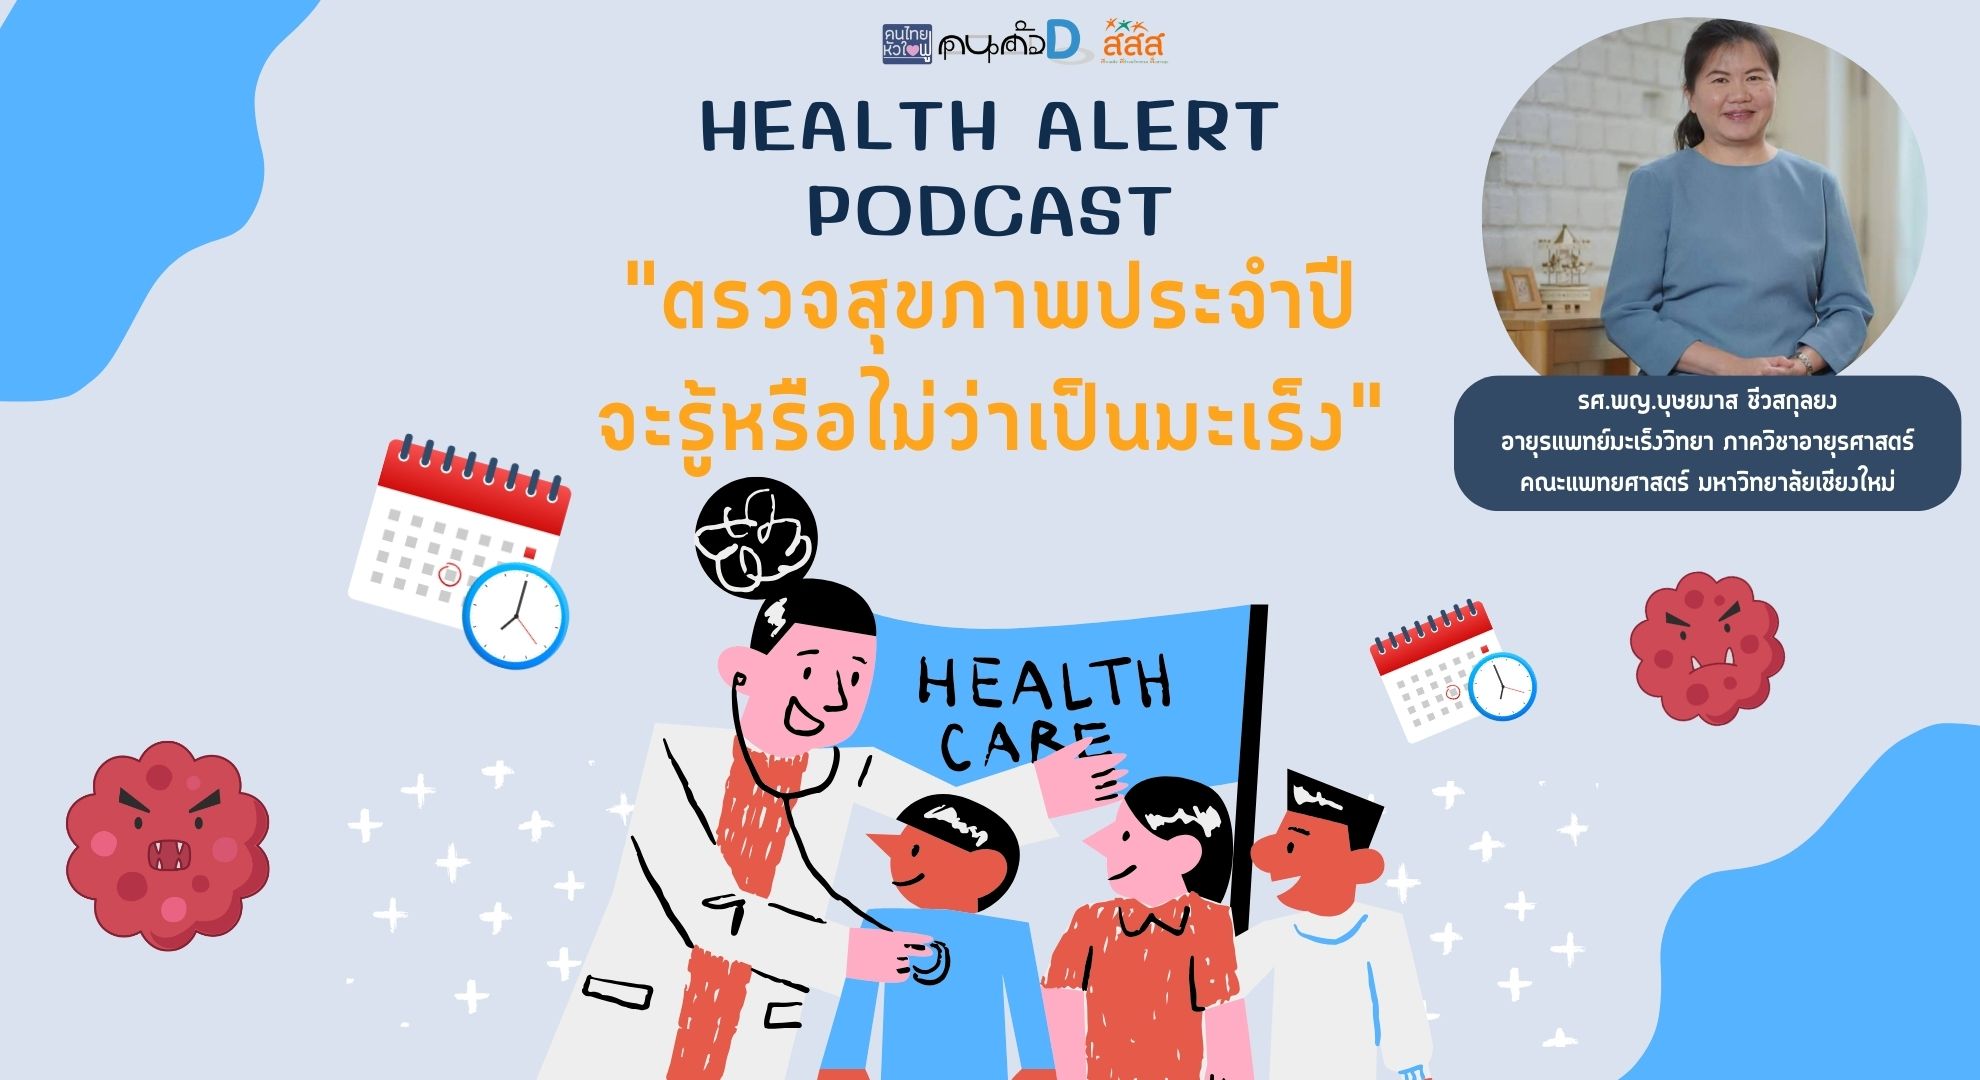 The Family Podcast Health Alert Podcast EP15 ตรวจสุขภาพประจำปี จะรู้หรือไม่ว่าเป็นมะเร็ง